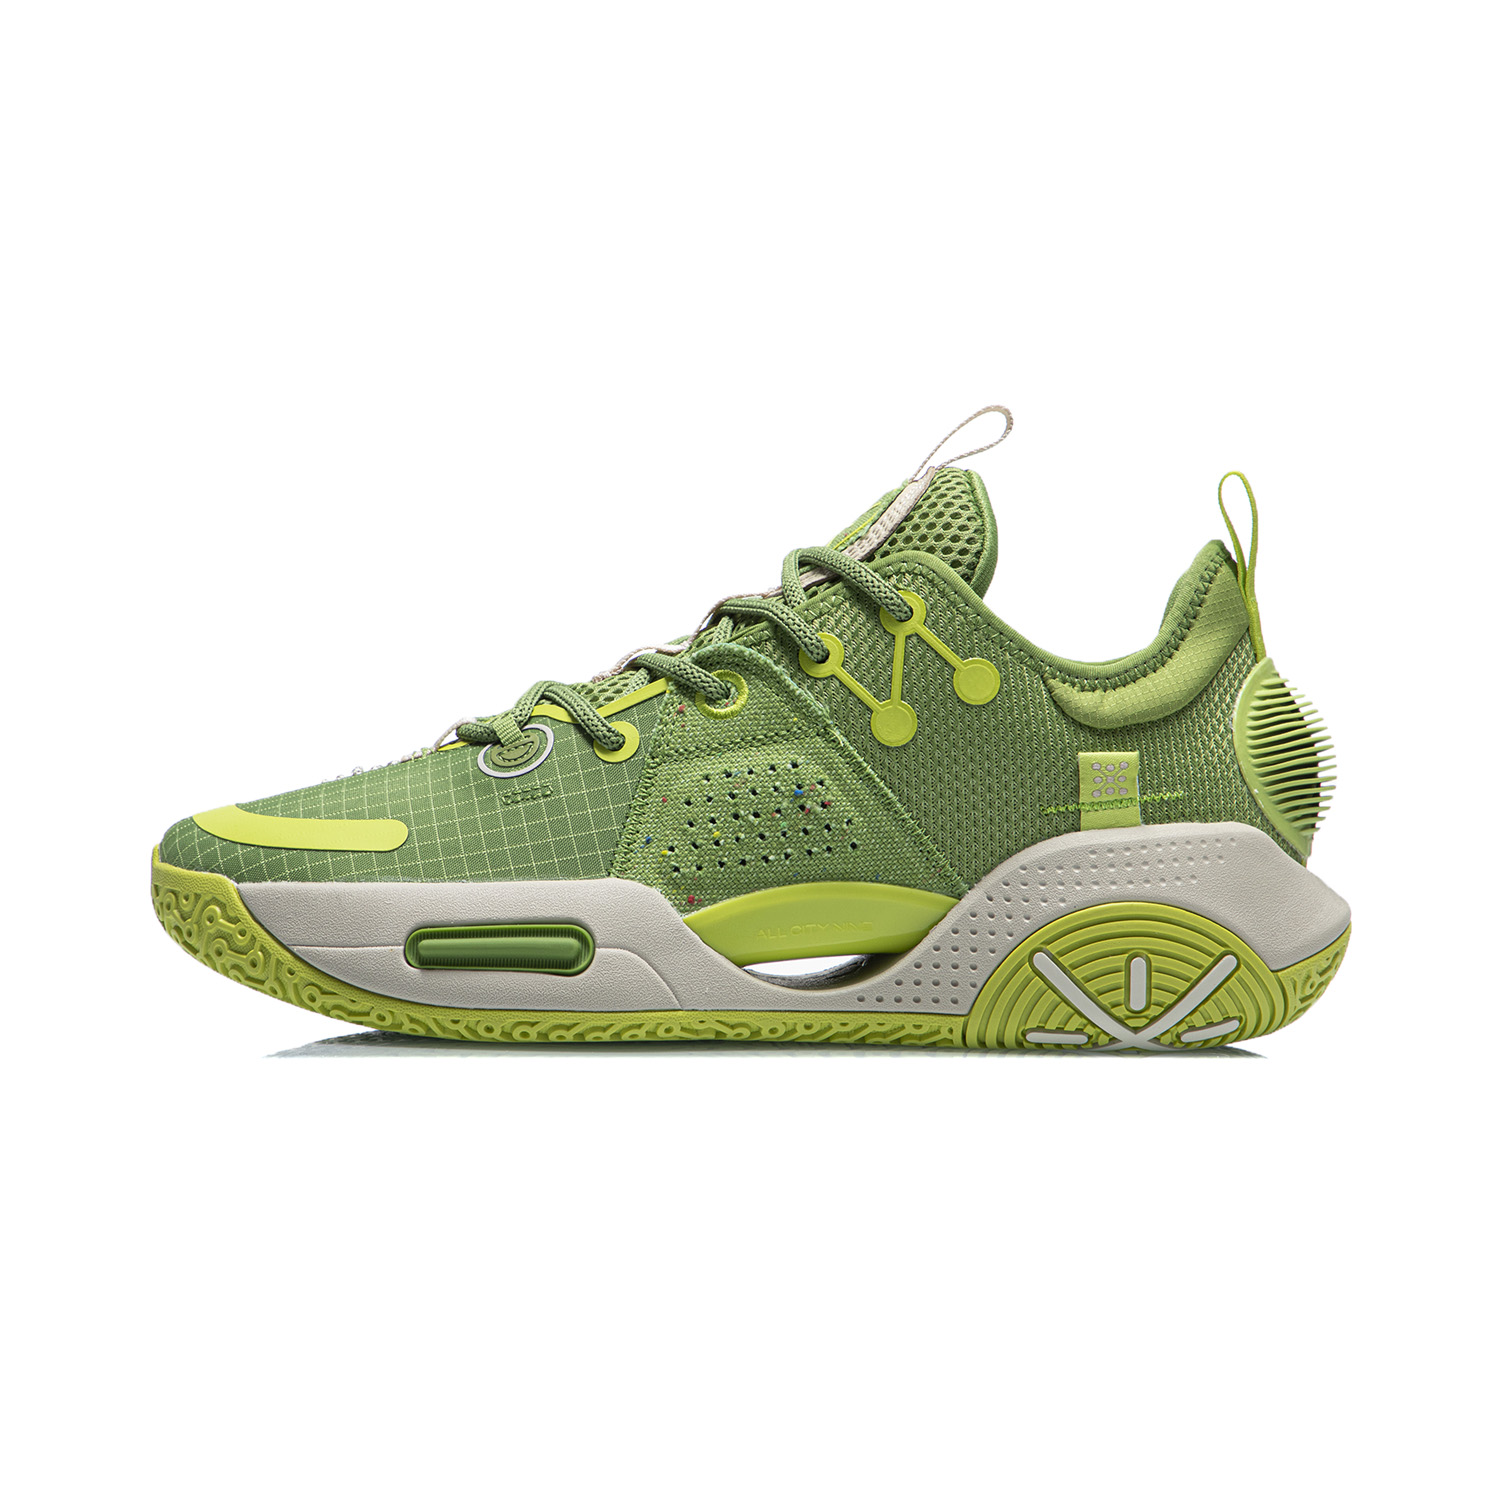 韋德全城9 V1.5 實戰籃球鞋 - 橄欖石綠